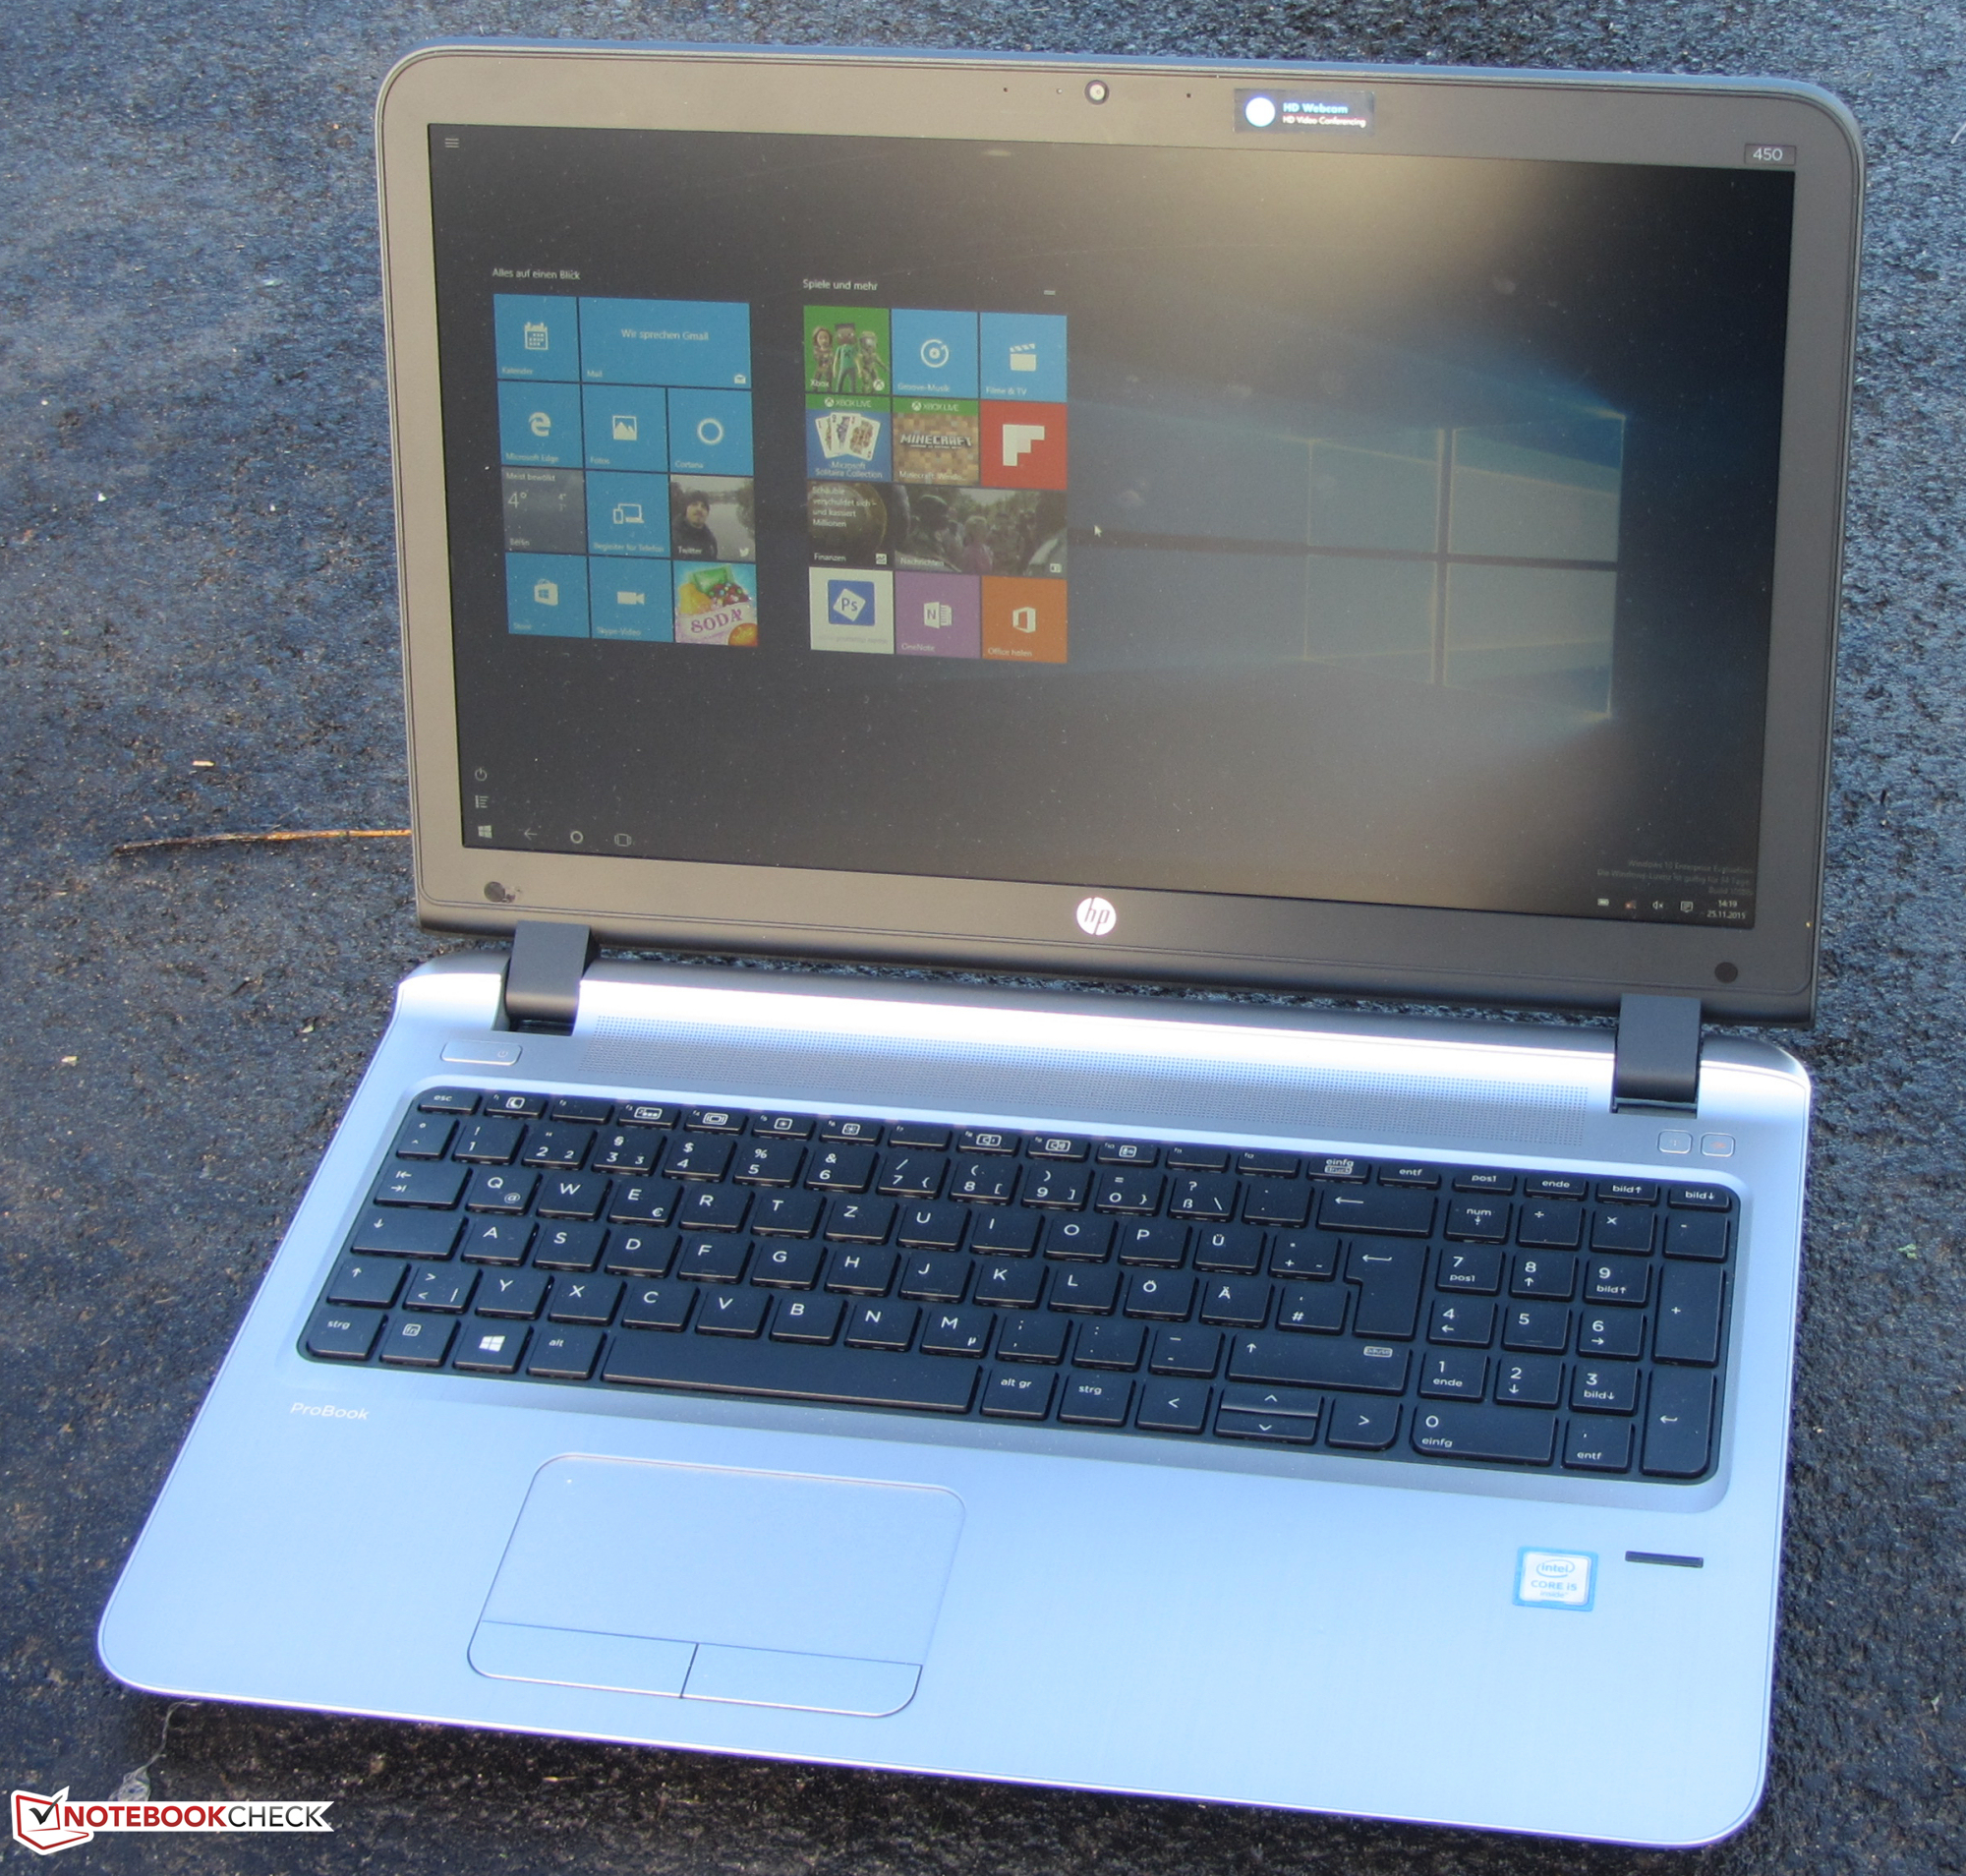  HP ProBook 450 G3 15.6 Business Ultrabook: Intel Core